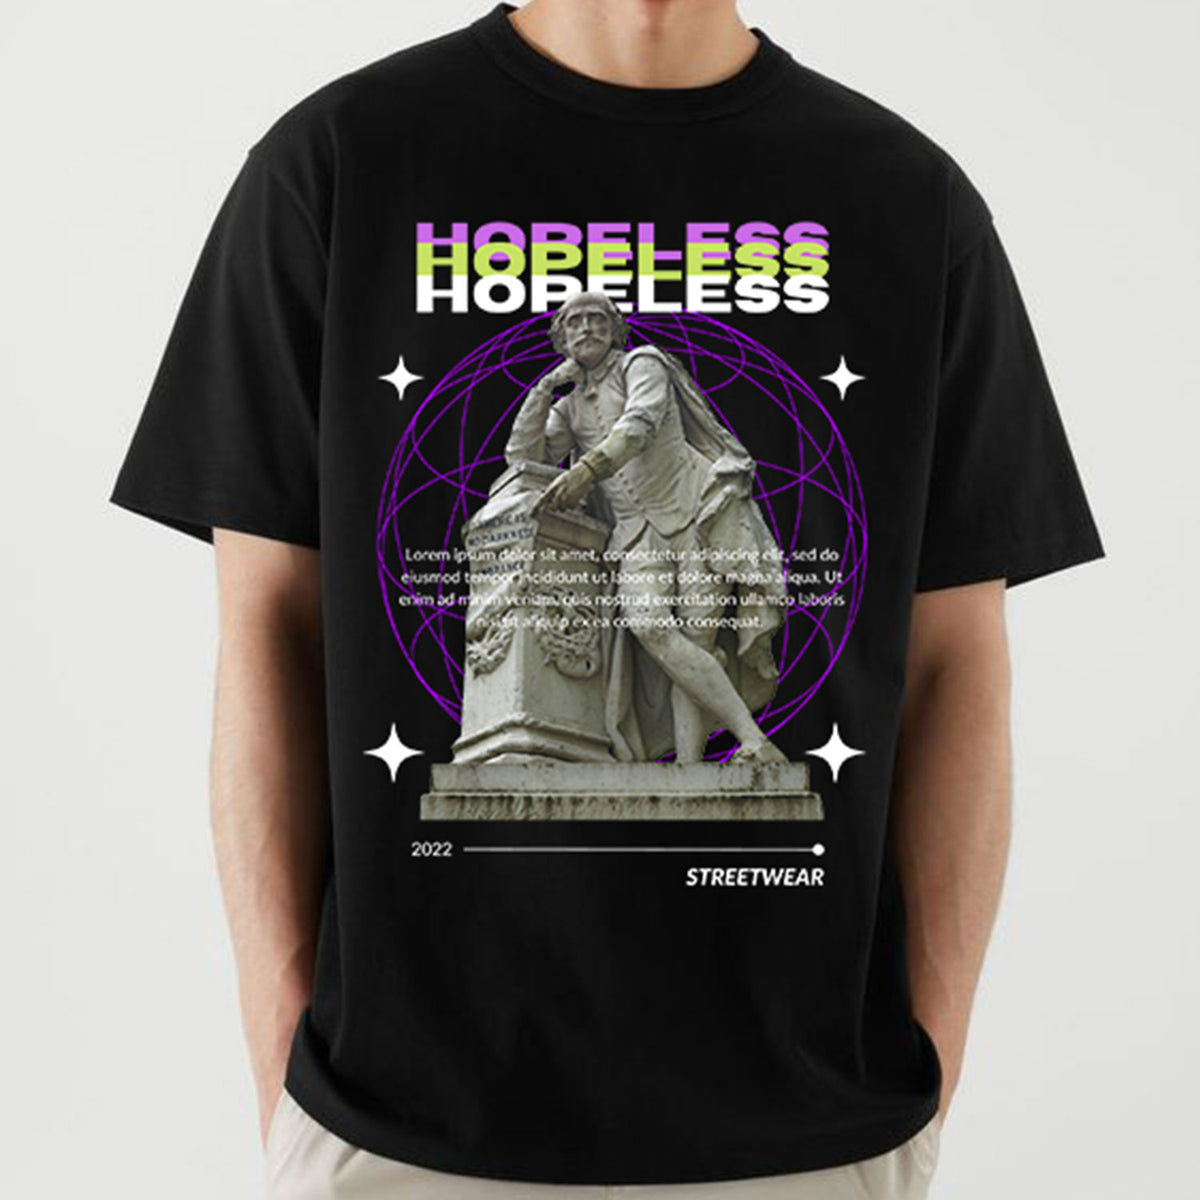 Men's Black Hopeless Printed Oversized T-shirt